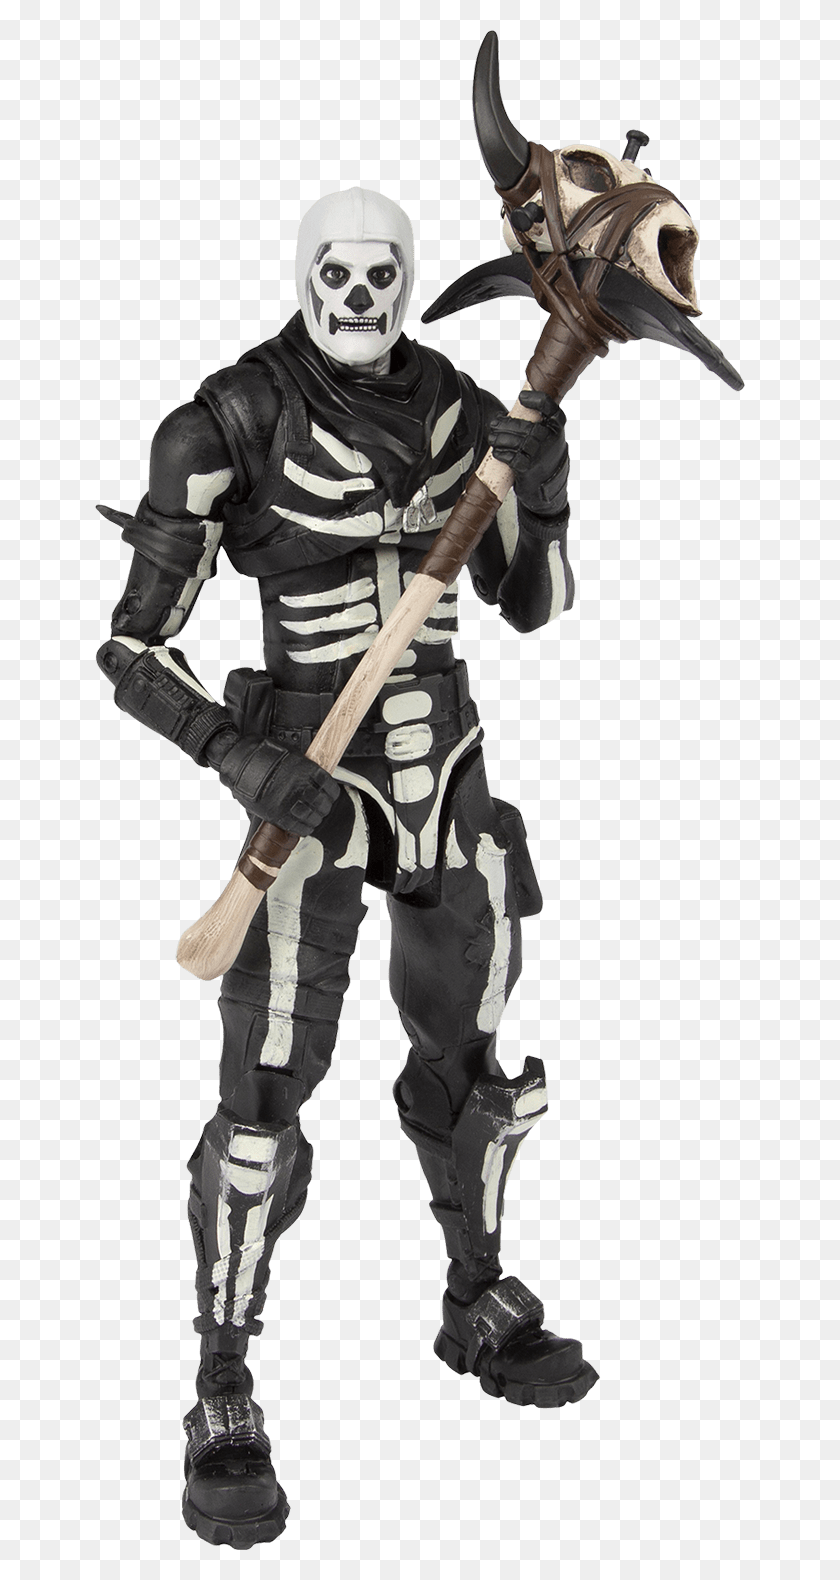 650x1520 Fortnite Action Figure Skull Trooper Fortnite Skull Trooper Action Figure, Person, Human, Ninja HD PNG Download